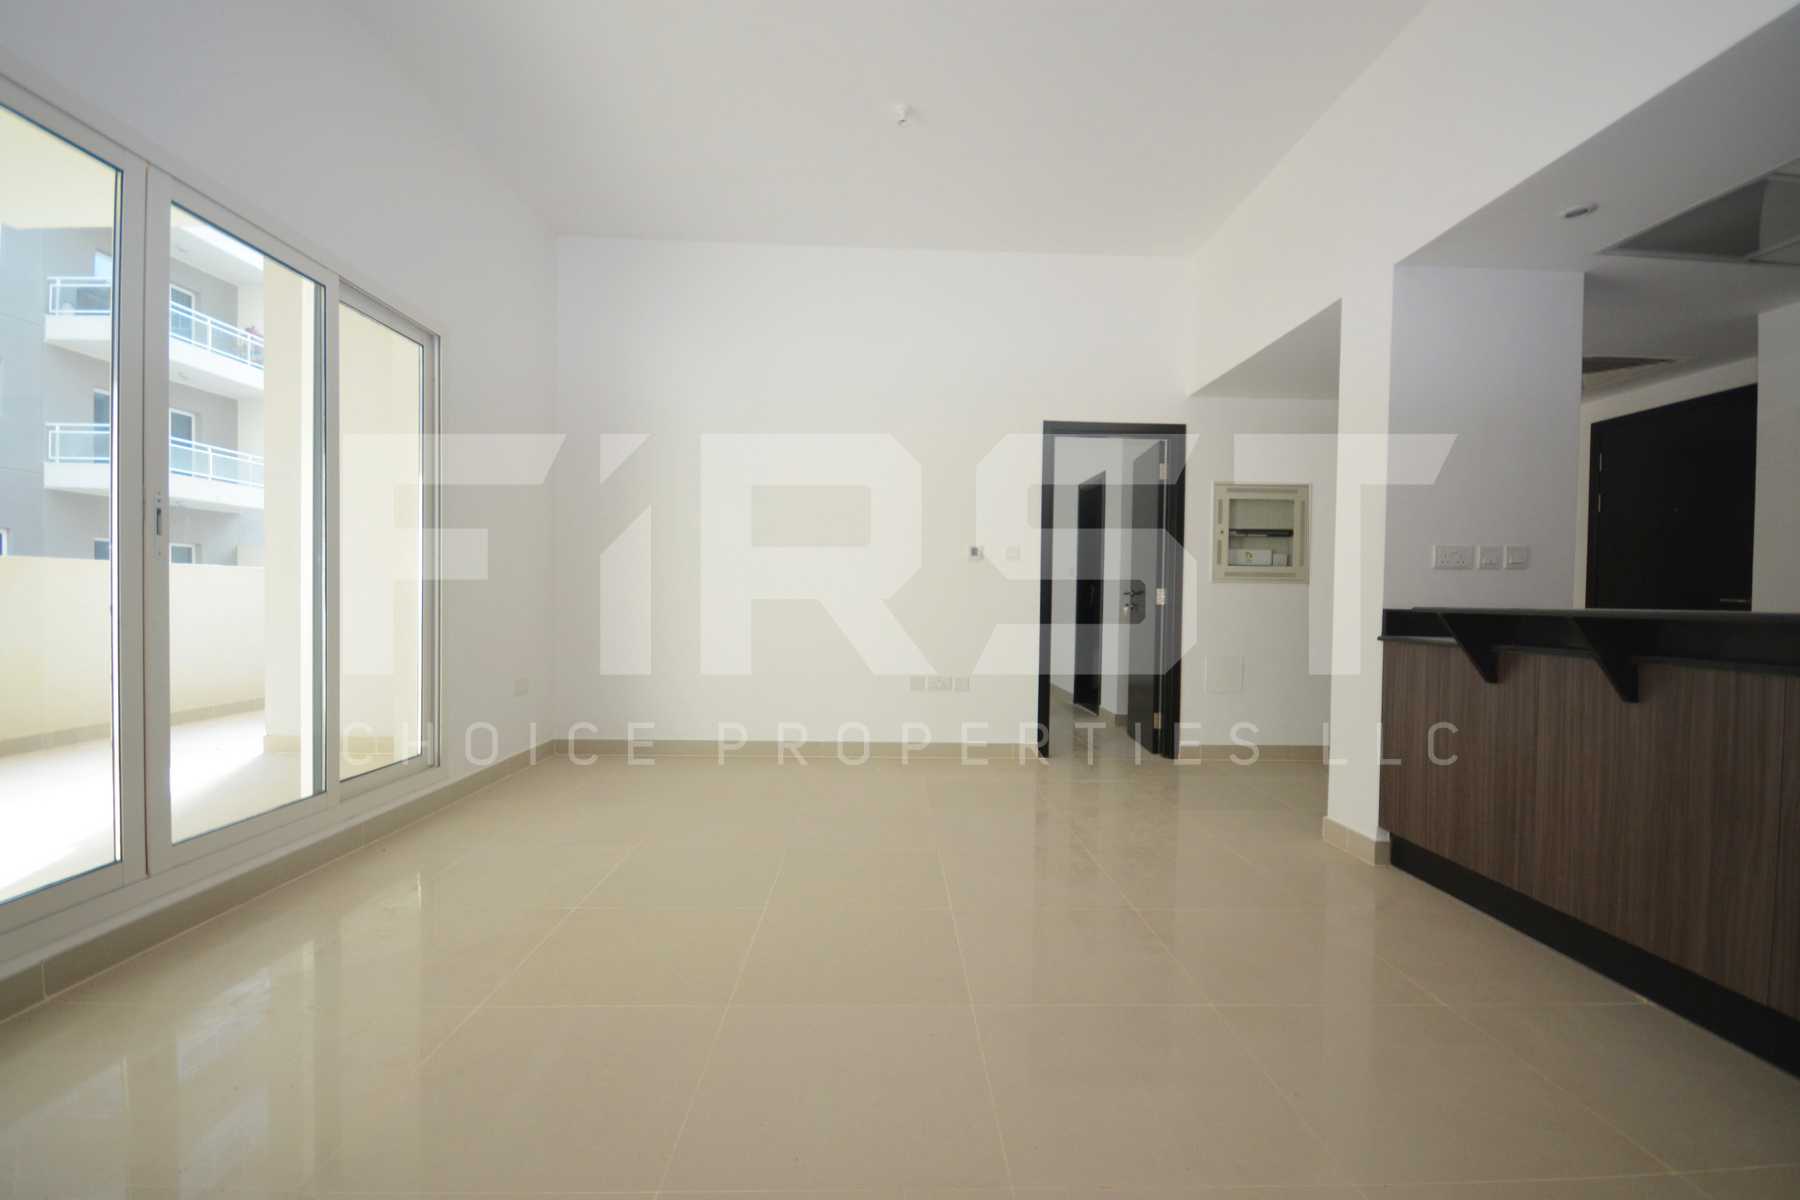 1 Bedroom Apartment Ground Floor in Al Reef Downtown Al Reef Abu Dhabi UAE (1).jpg